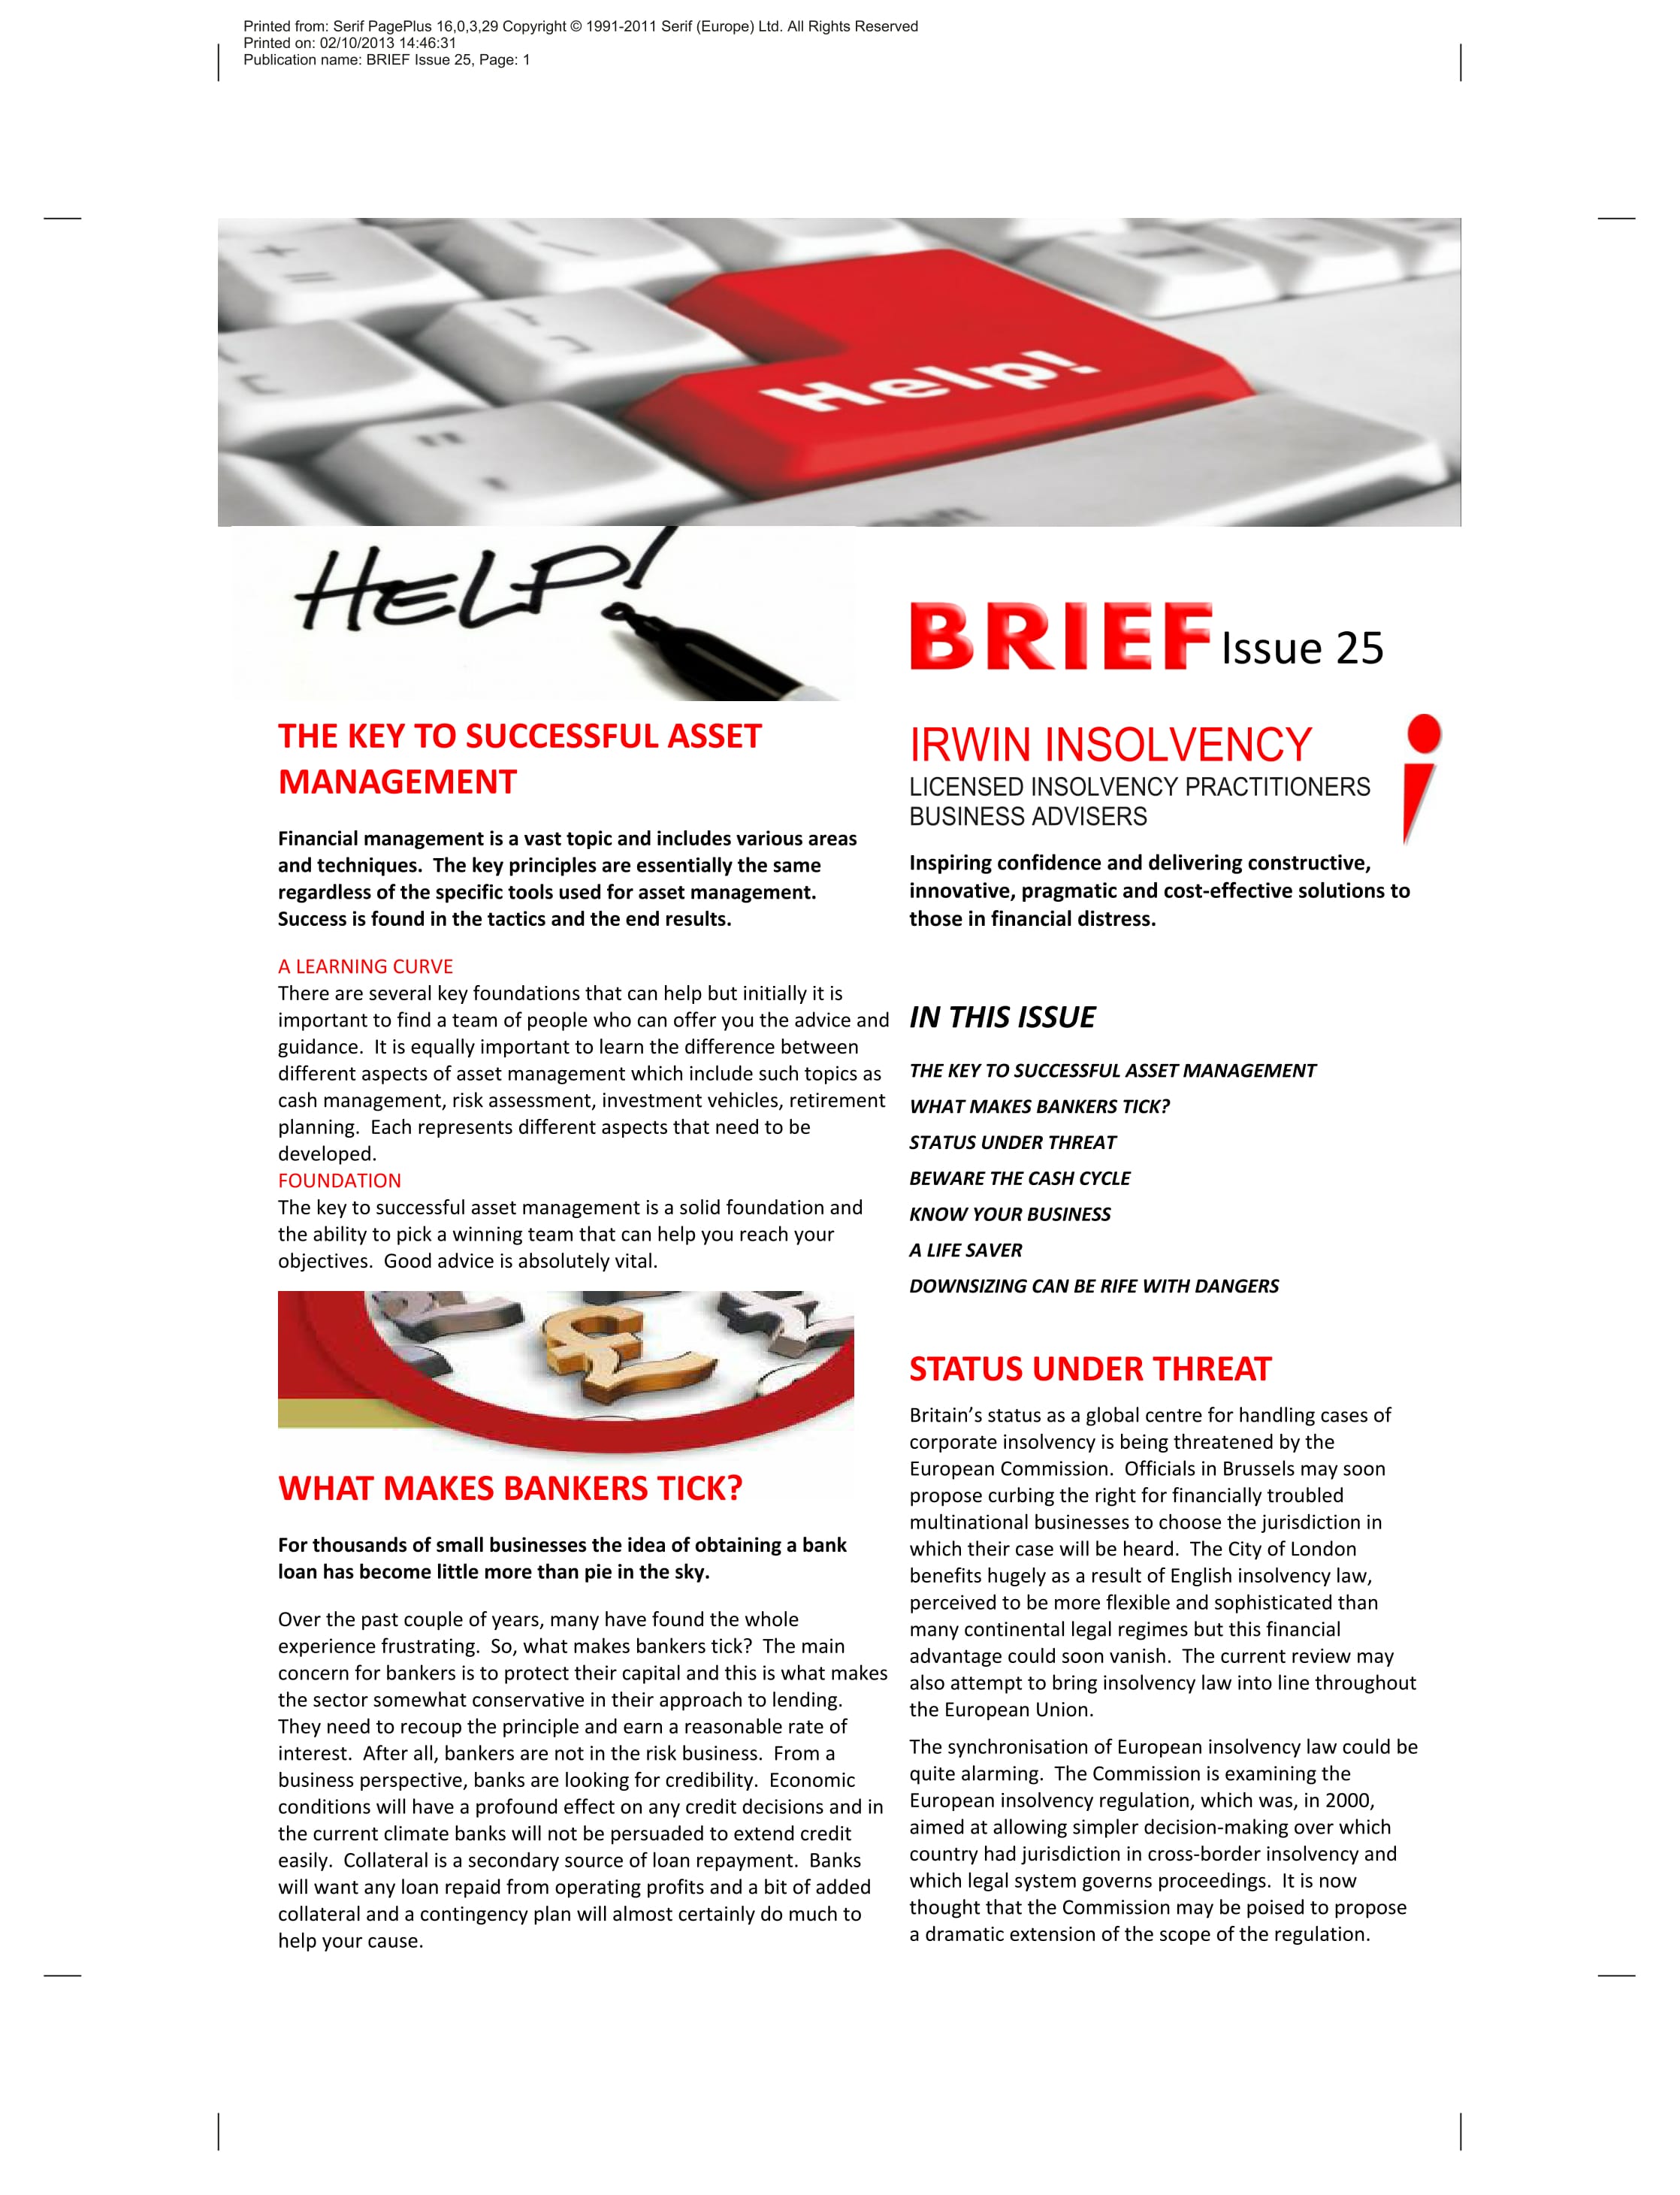 brief-issue-25-1